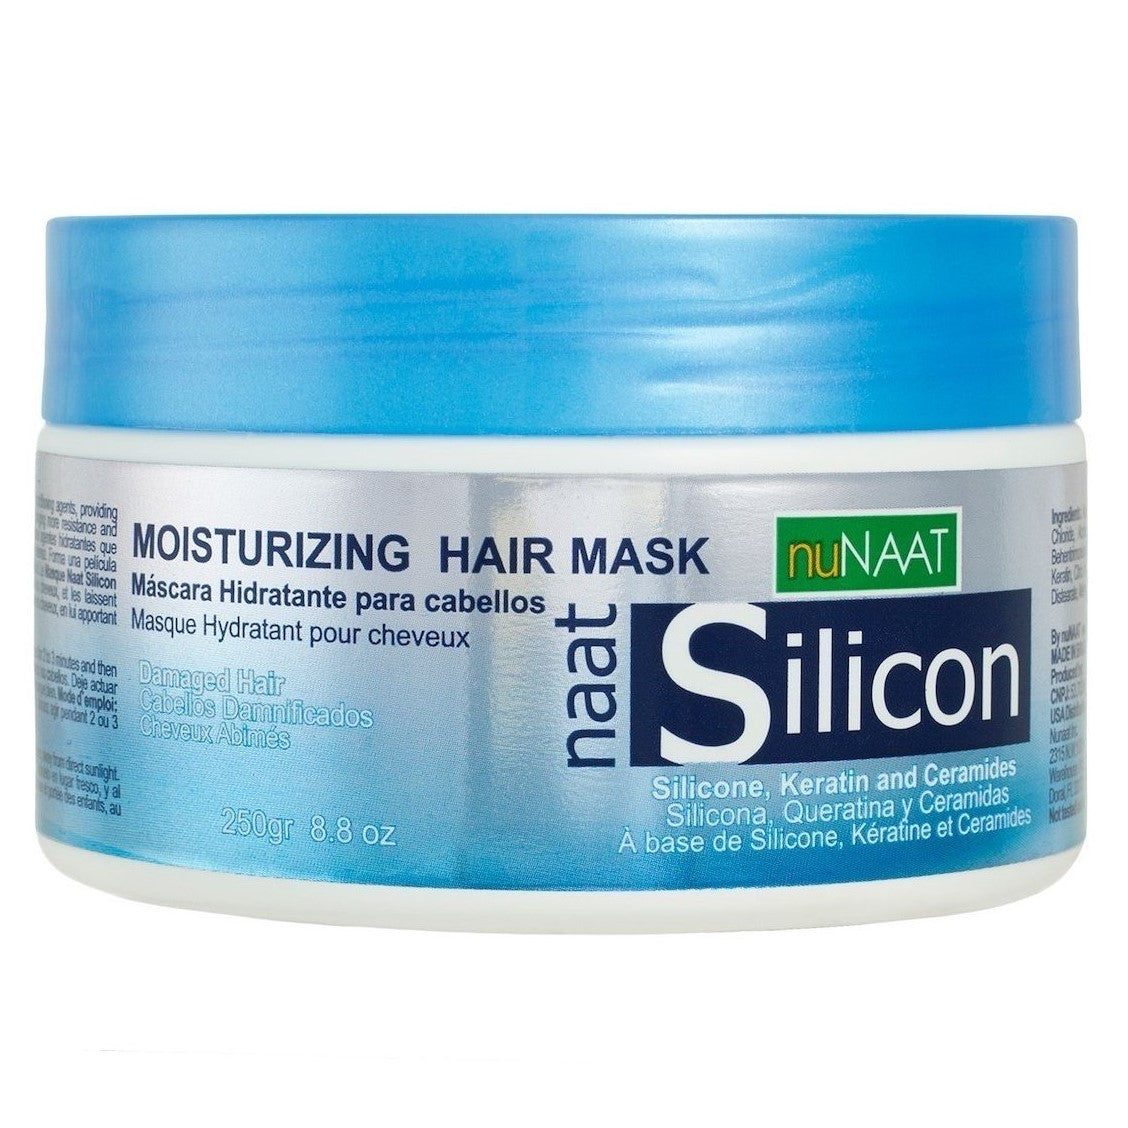 Nunath ikke silisium fuktighetsgivende hårmaske ౨౫౦ malt